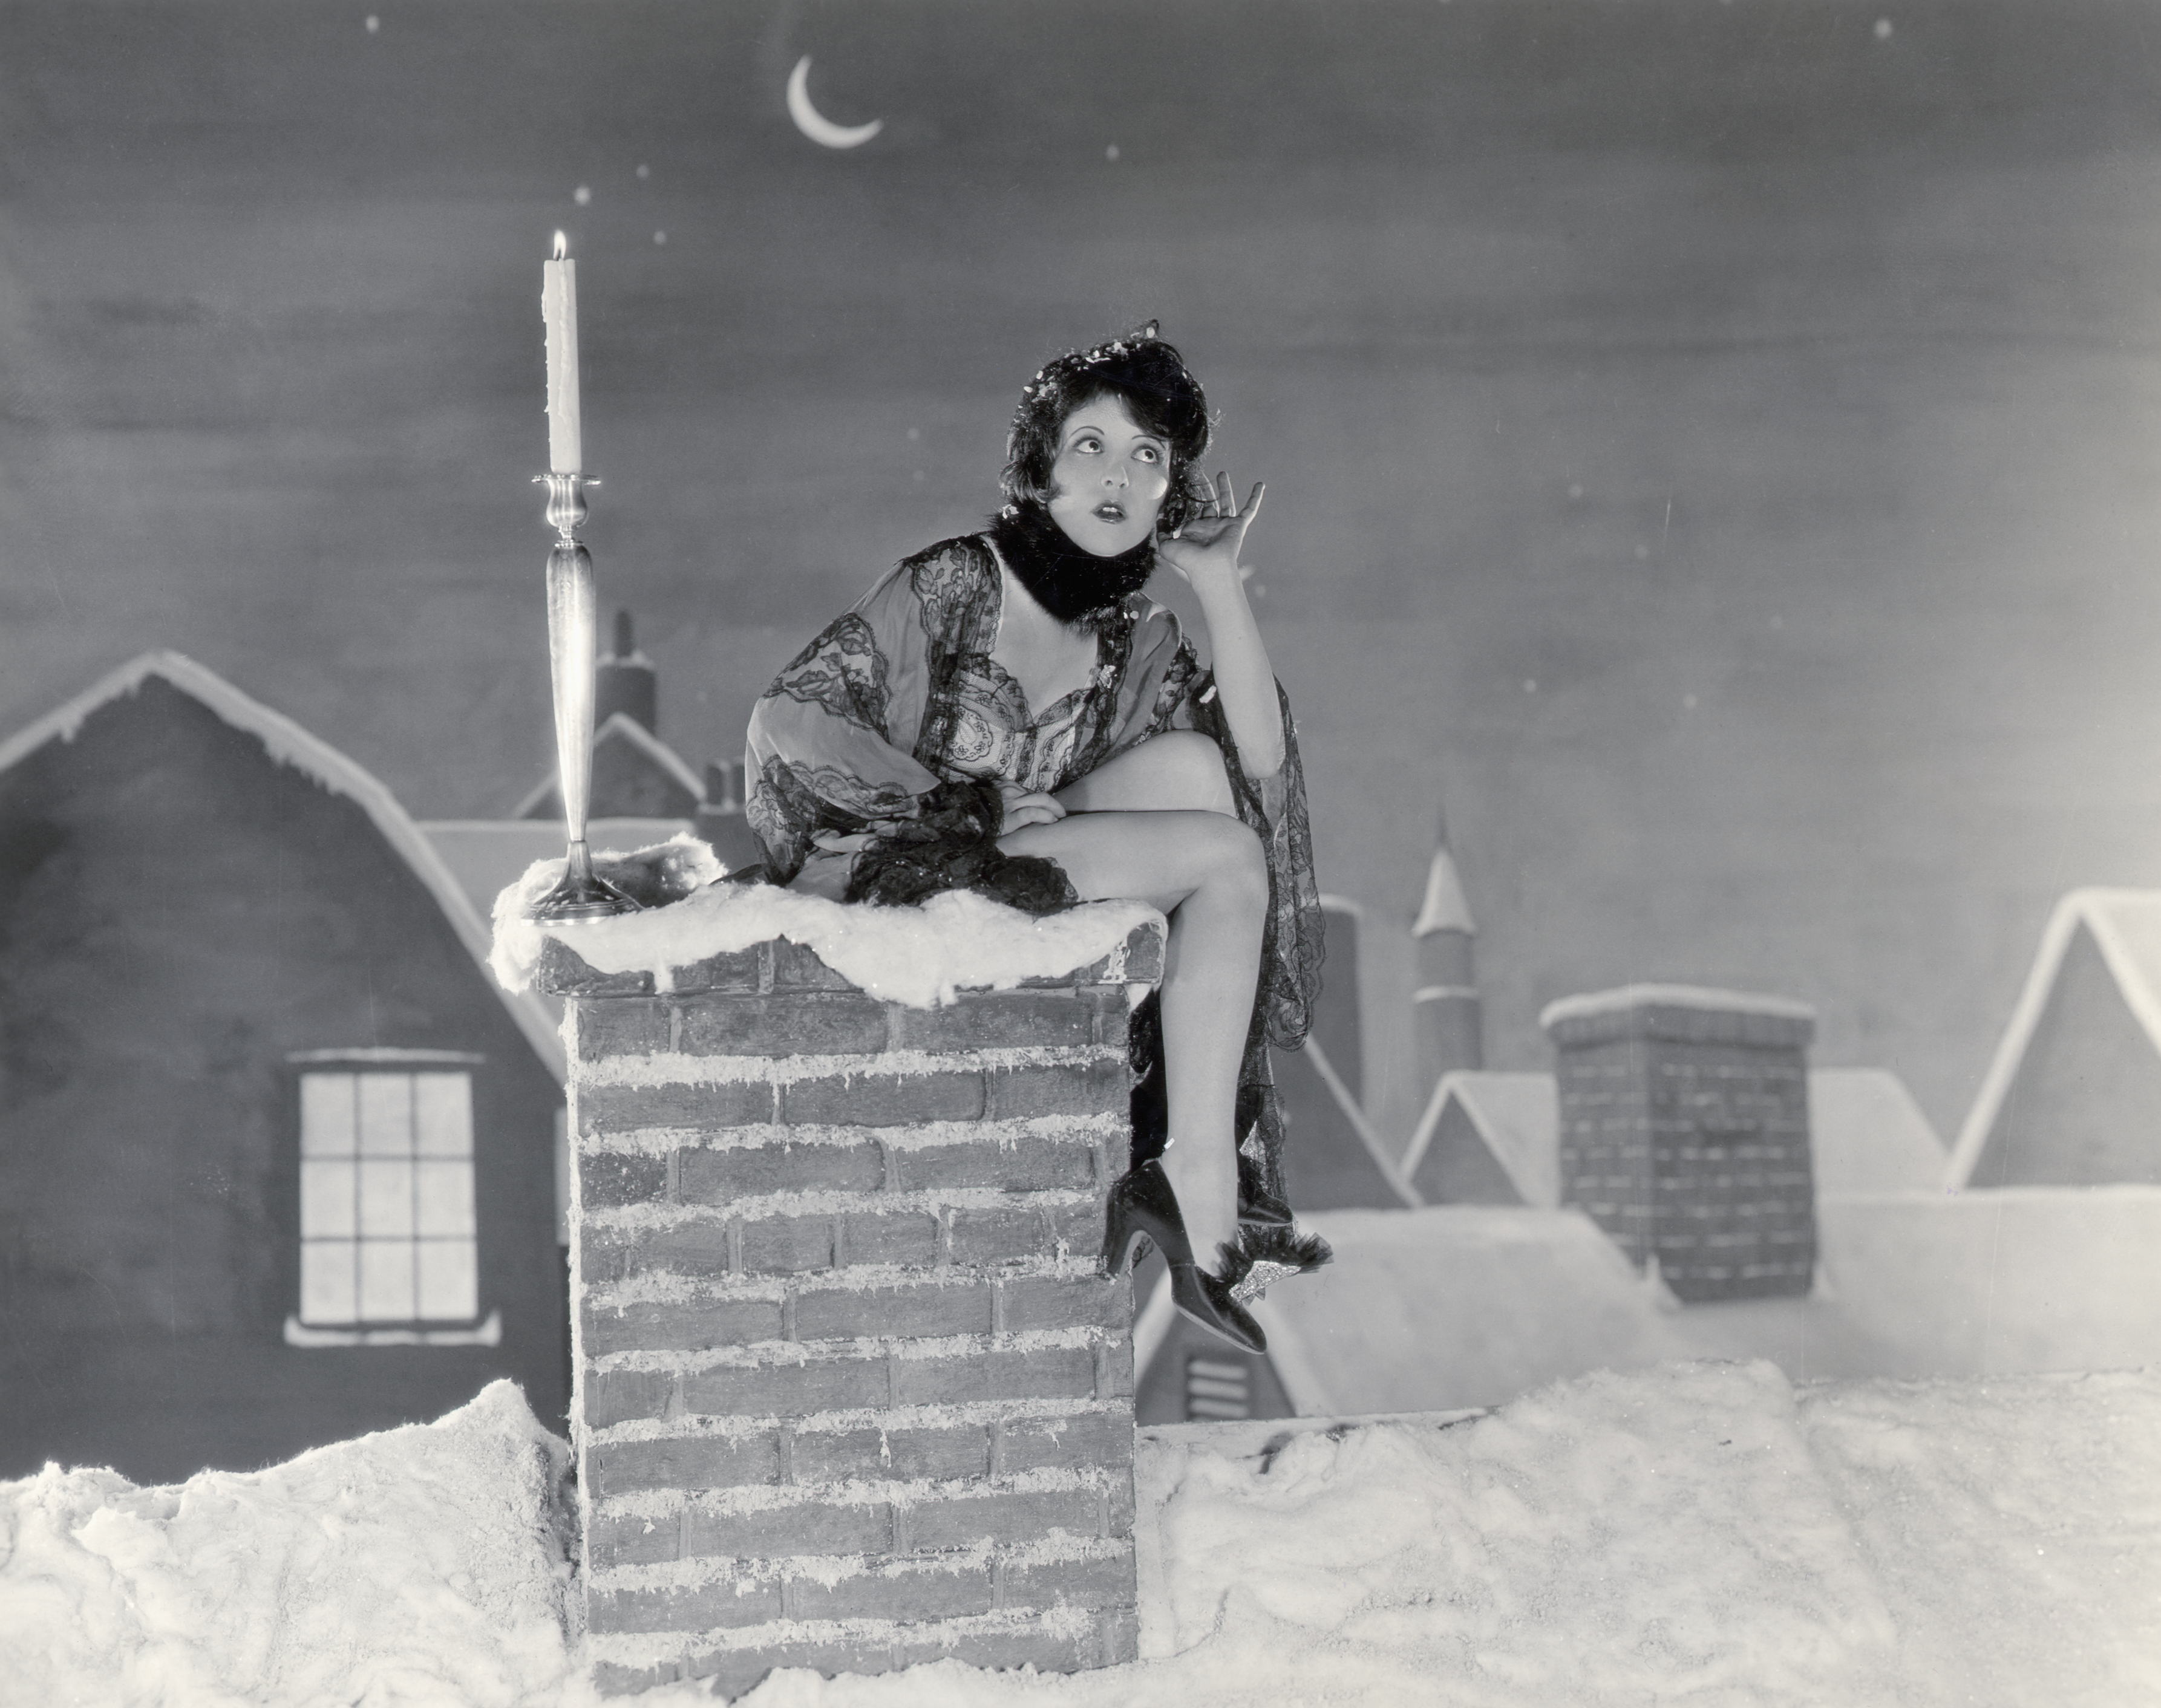 Clara Bow em frame de filme; ela está sentada em uma chaminé com neve durante a noite